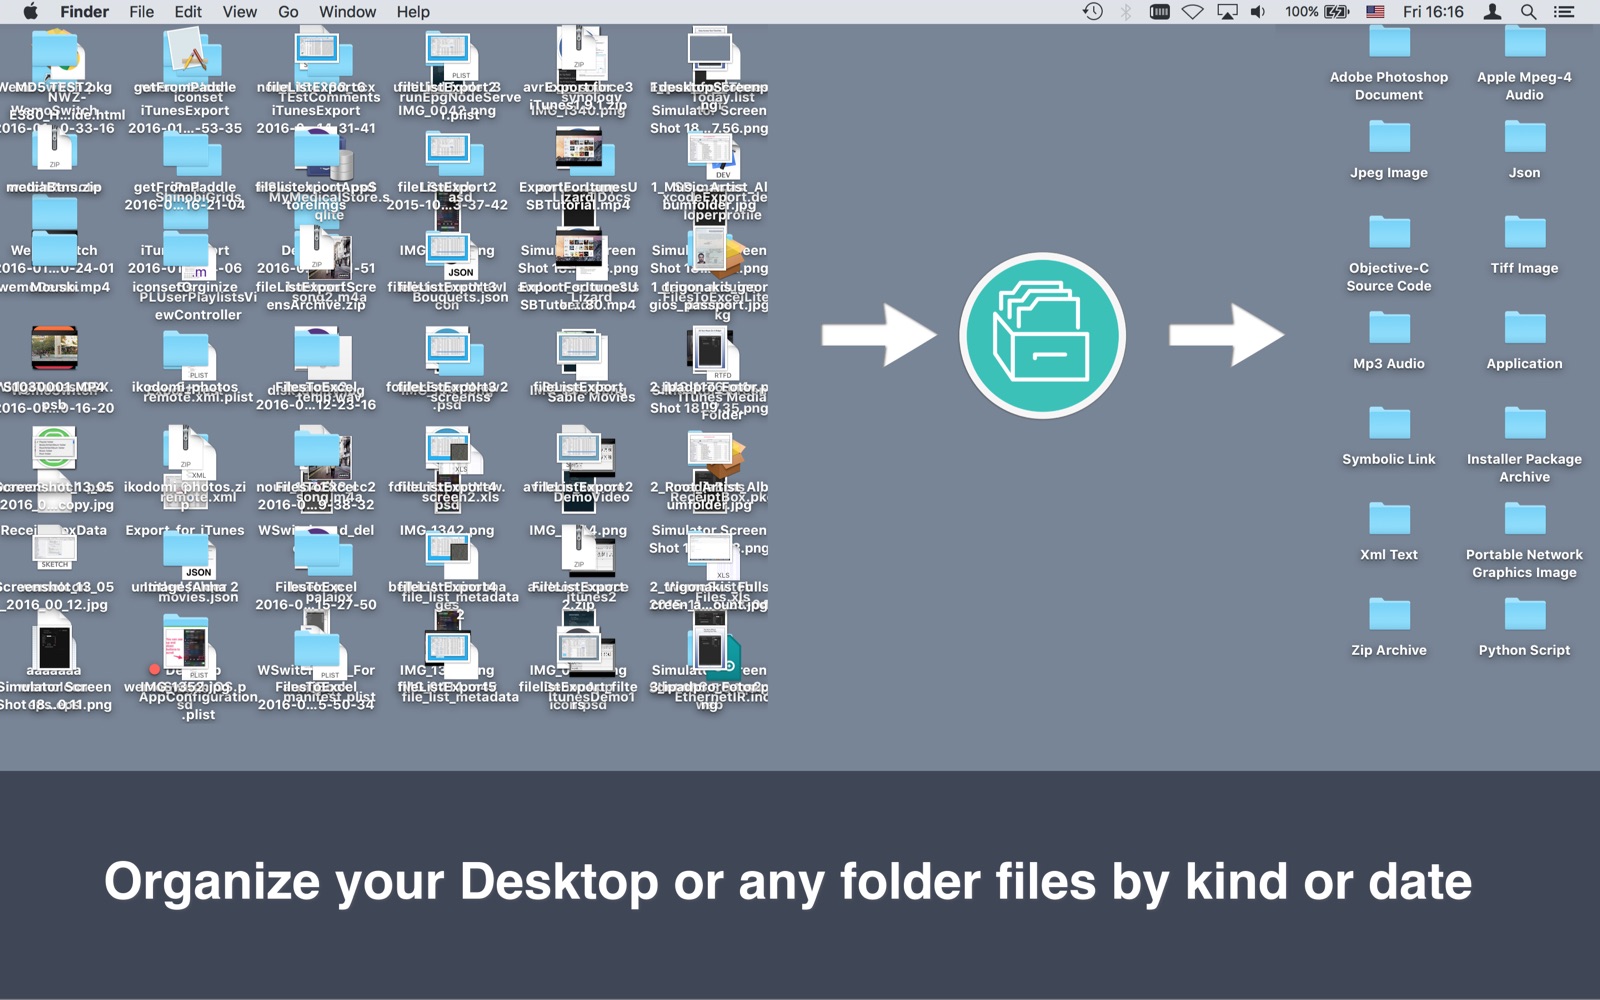 Folder Organizer 1.0 : Main Window